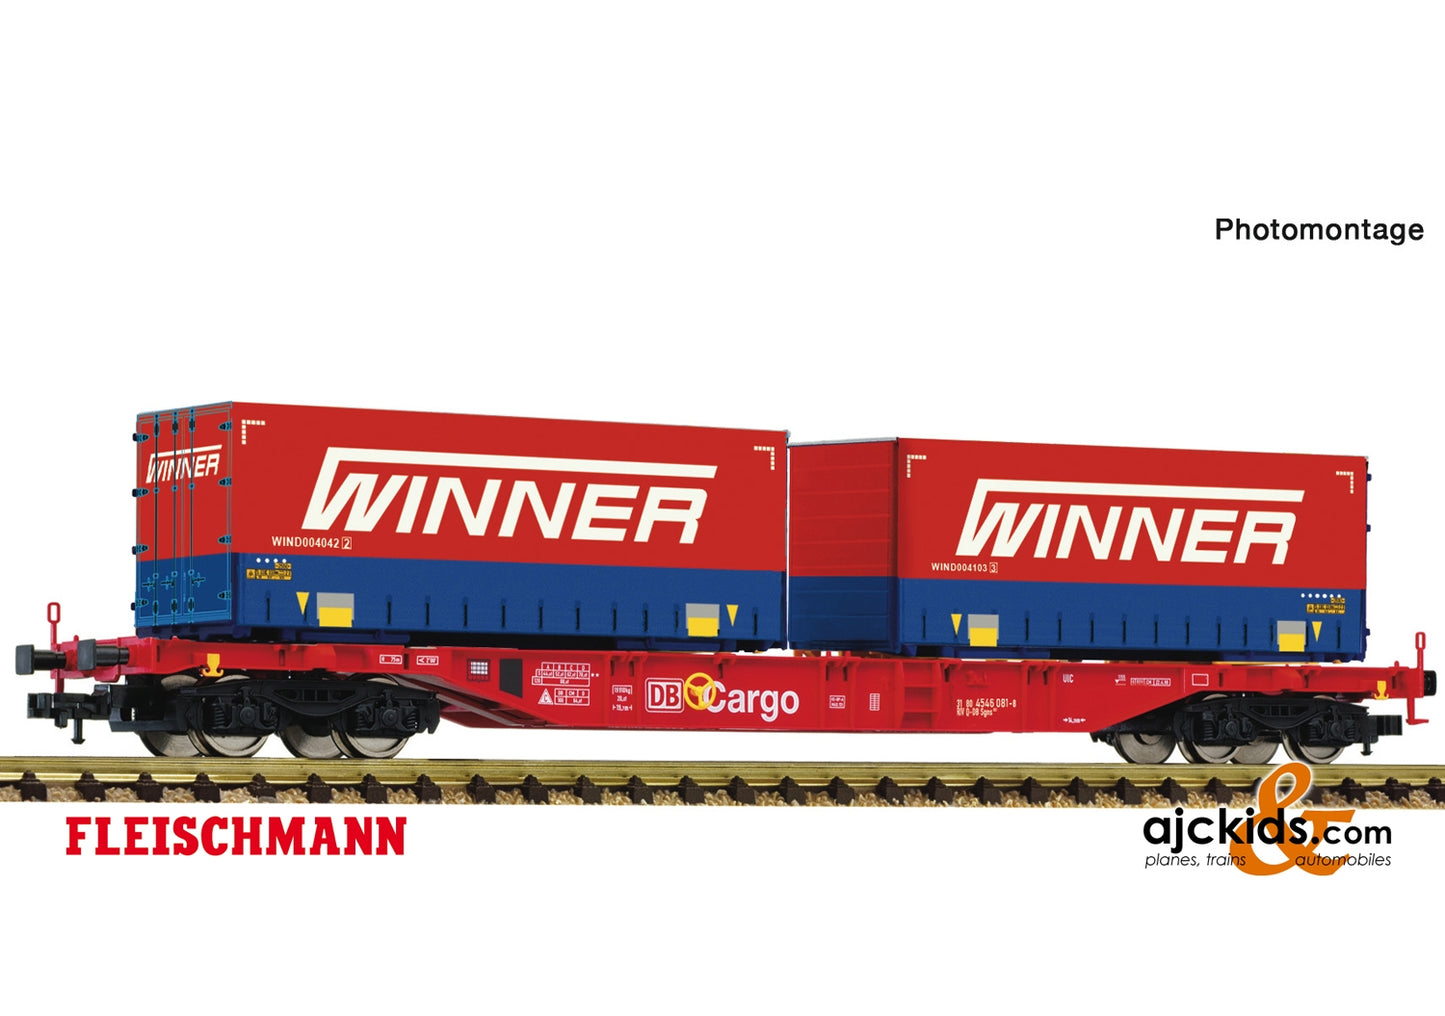 Fleischmann 825037 - Container carrier wagon + Winner Display 825030 #7